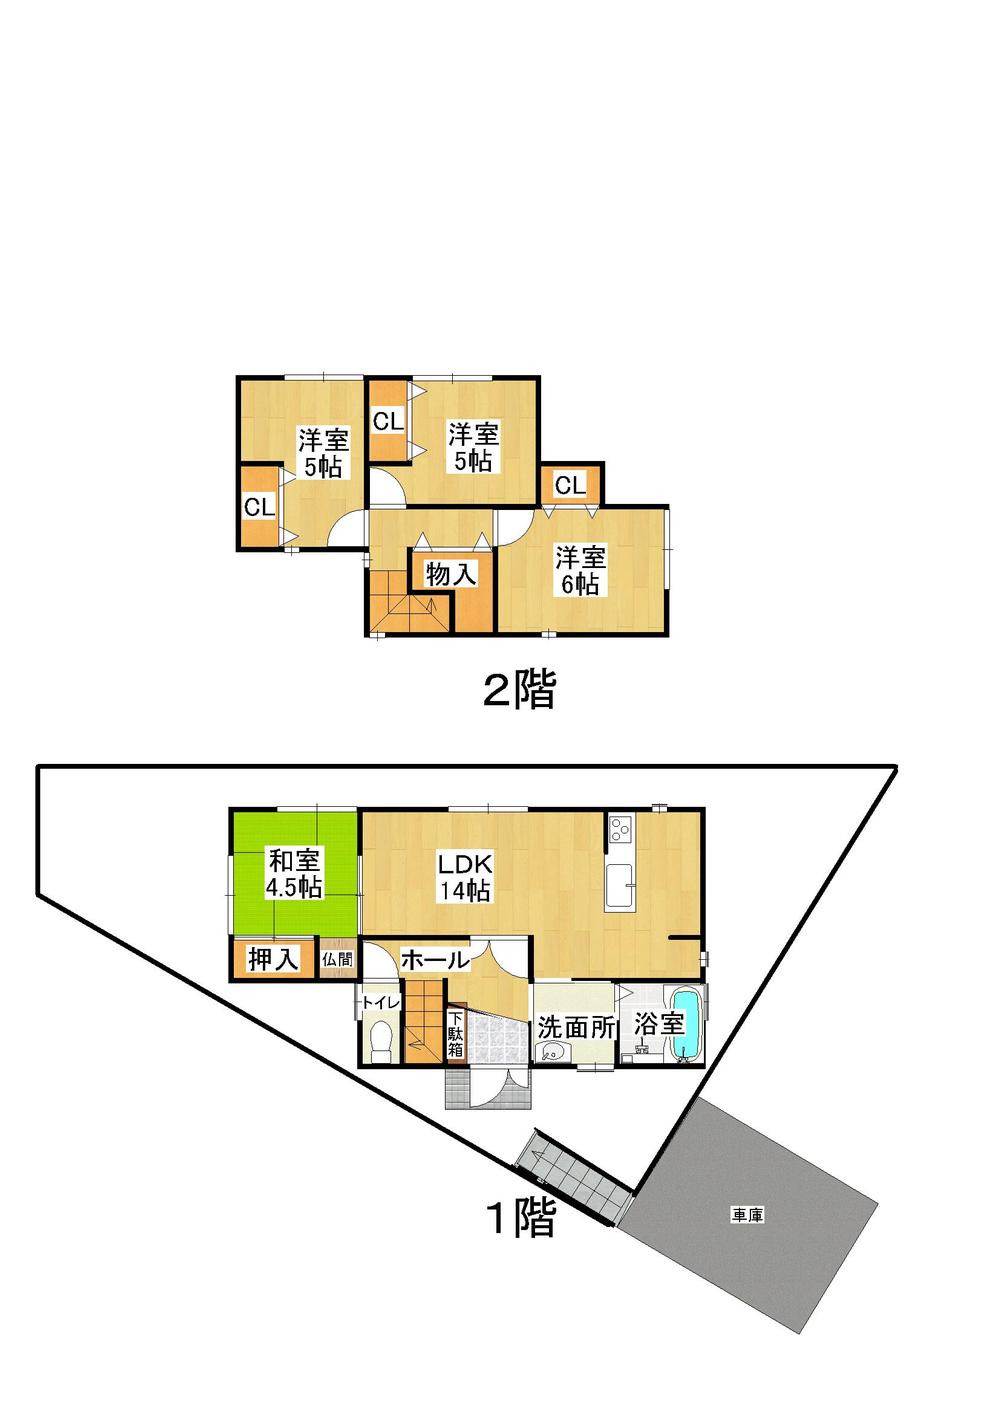 Floor plan. 15.5 million yen, 4LDK, Land area 147.3 sq m , Building area 86.26 sq m